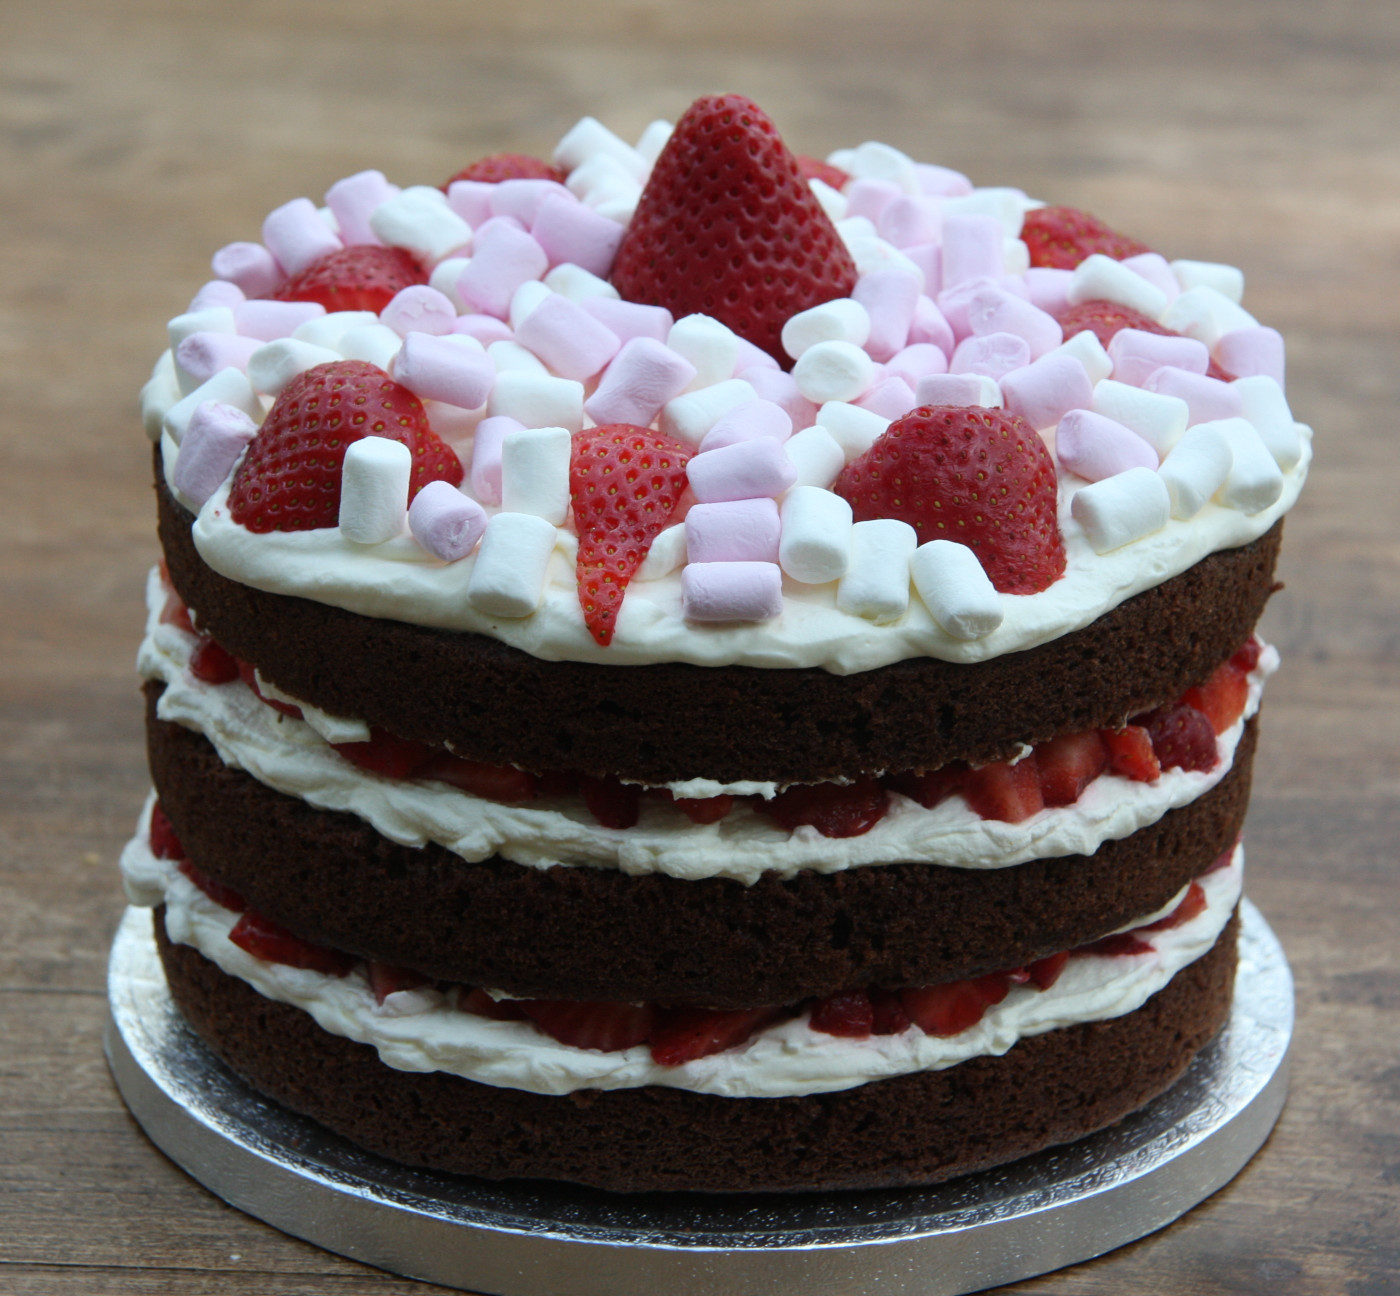 Strawberry Birthday Cake
 Chocolate Birthday Cake with Strawberries and Cream and